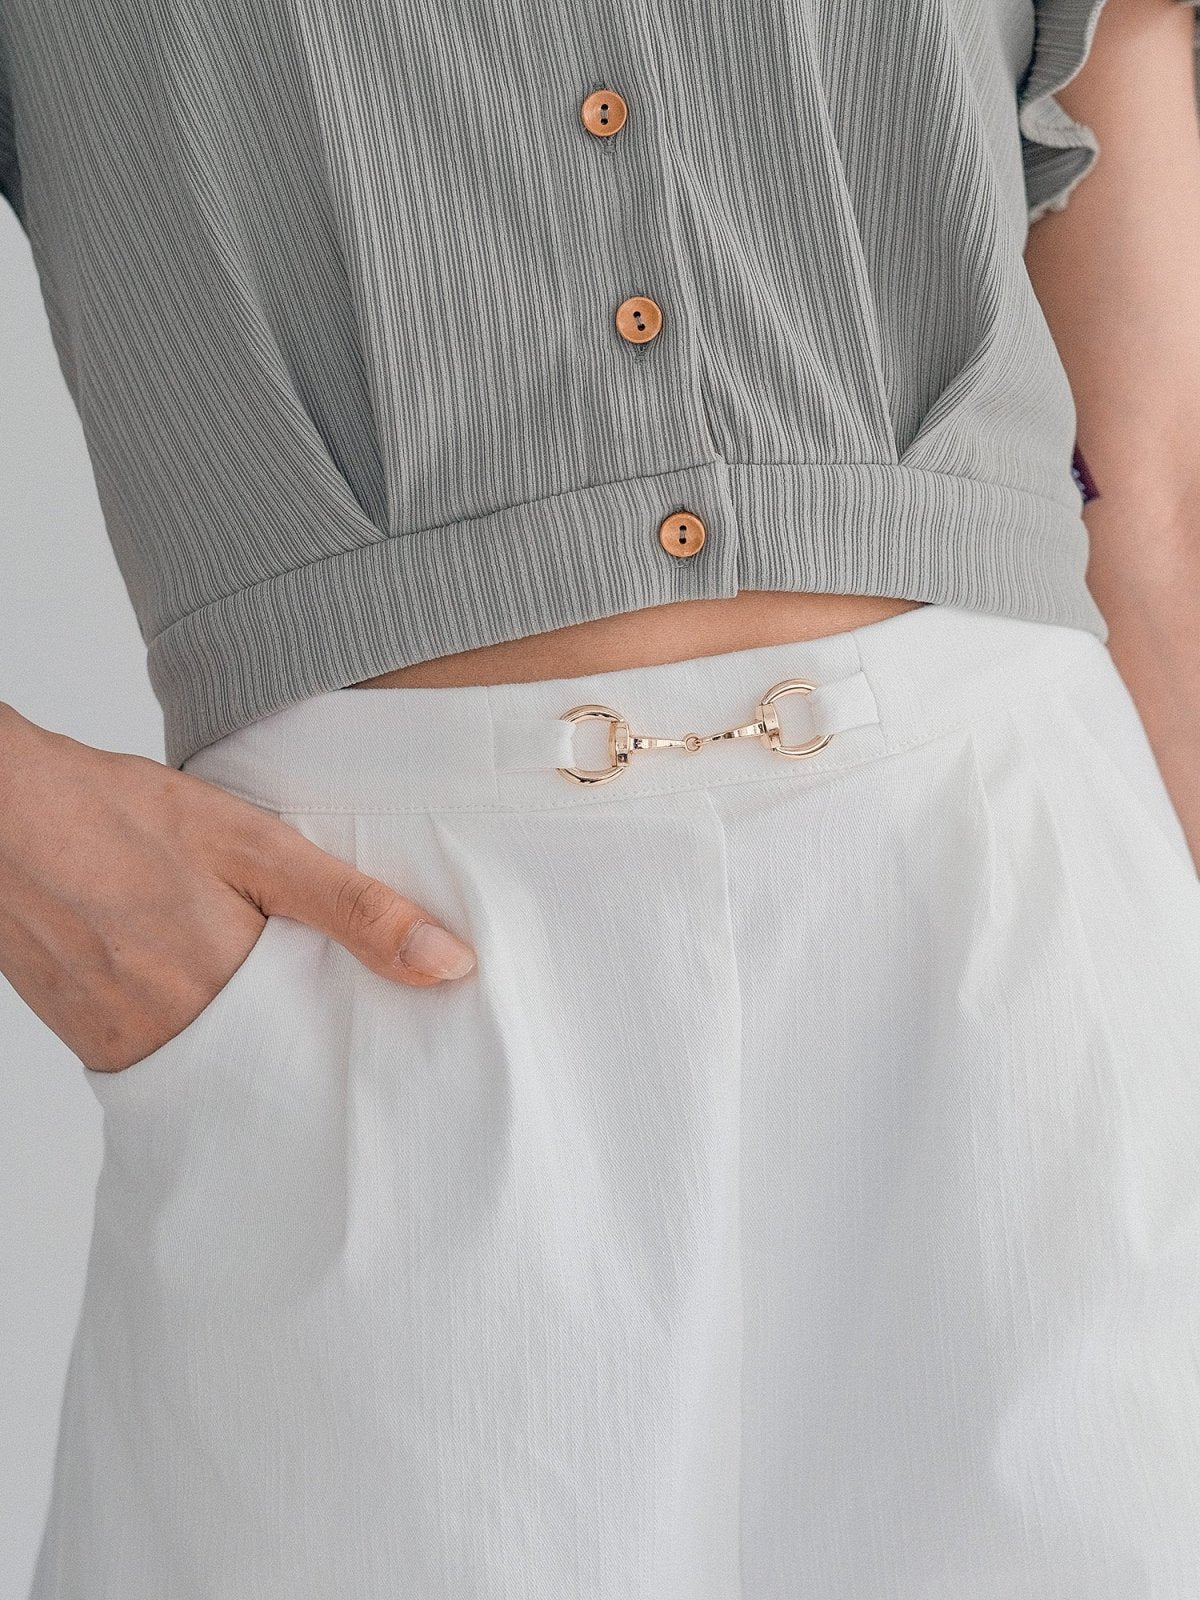 Melanie Buckle Pleated Shorts - DAG-DD0340-23IvoryS - Mochi Ivory - S - D'ZAGE Designs